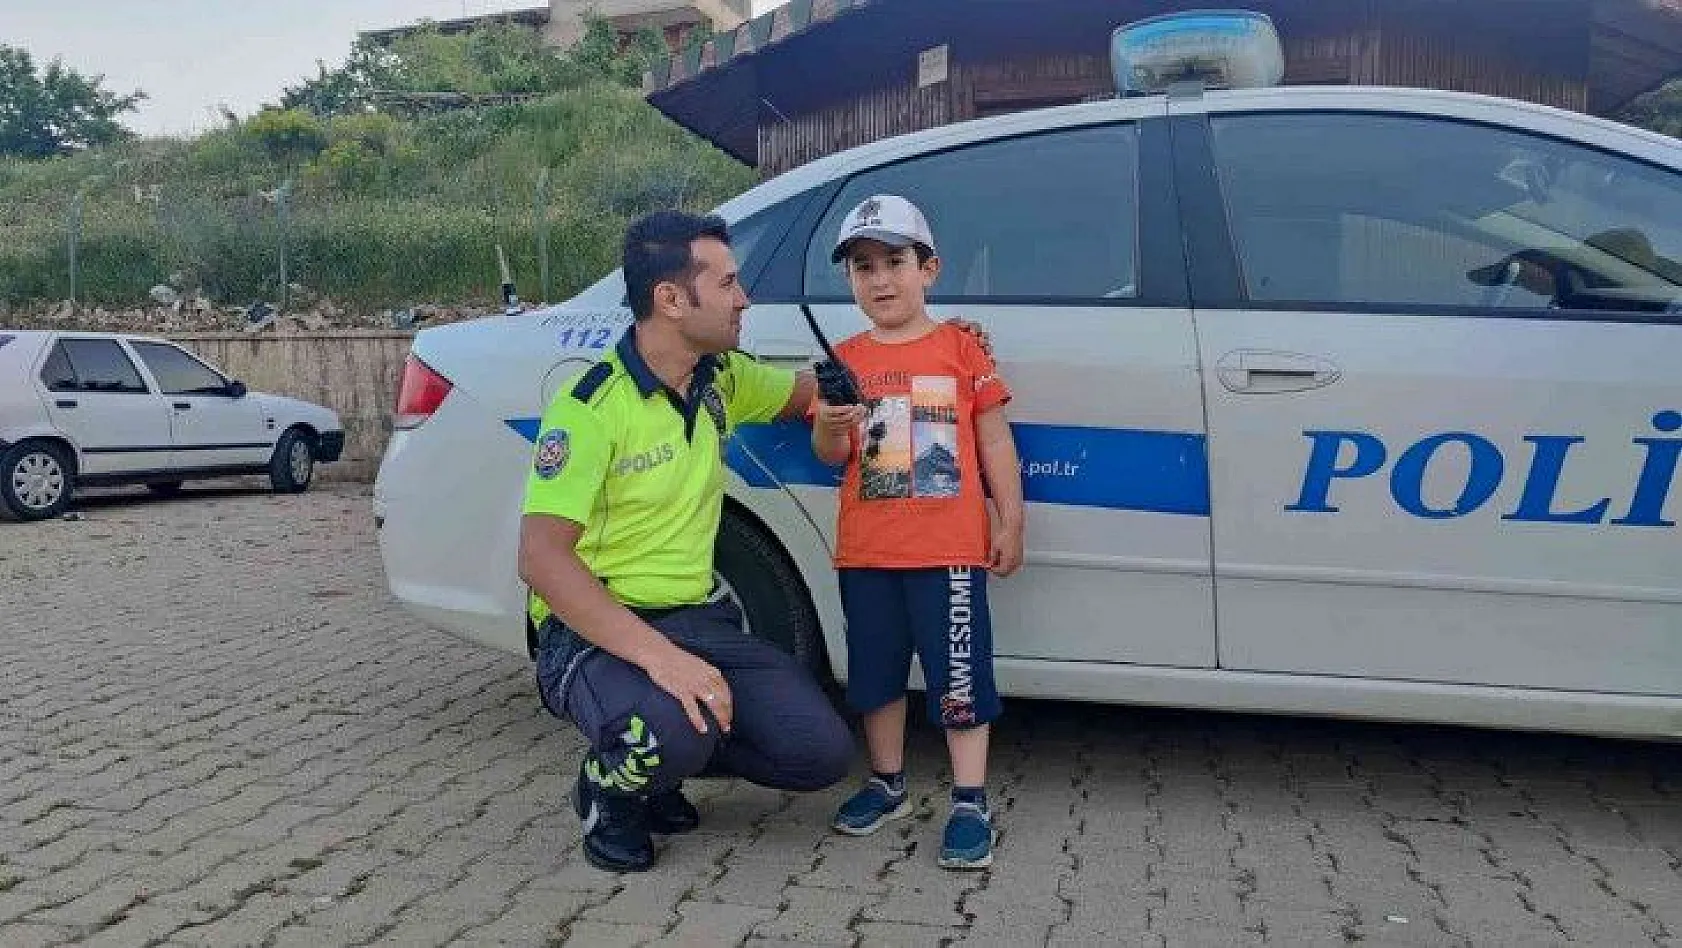 Minik Serdar Utku'nun polislik hayali gerçek oldu